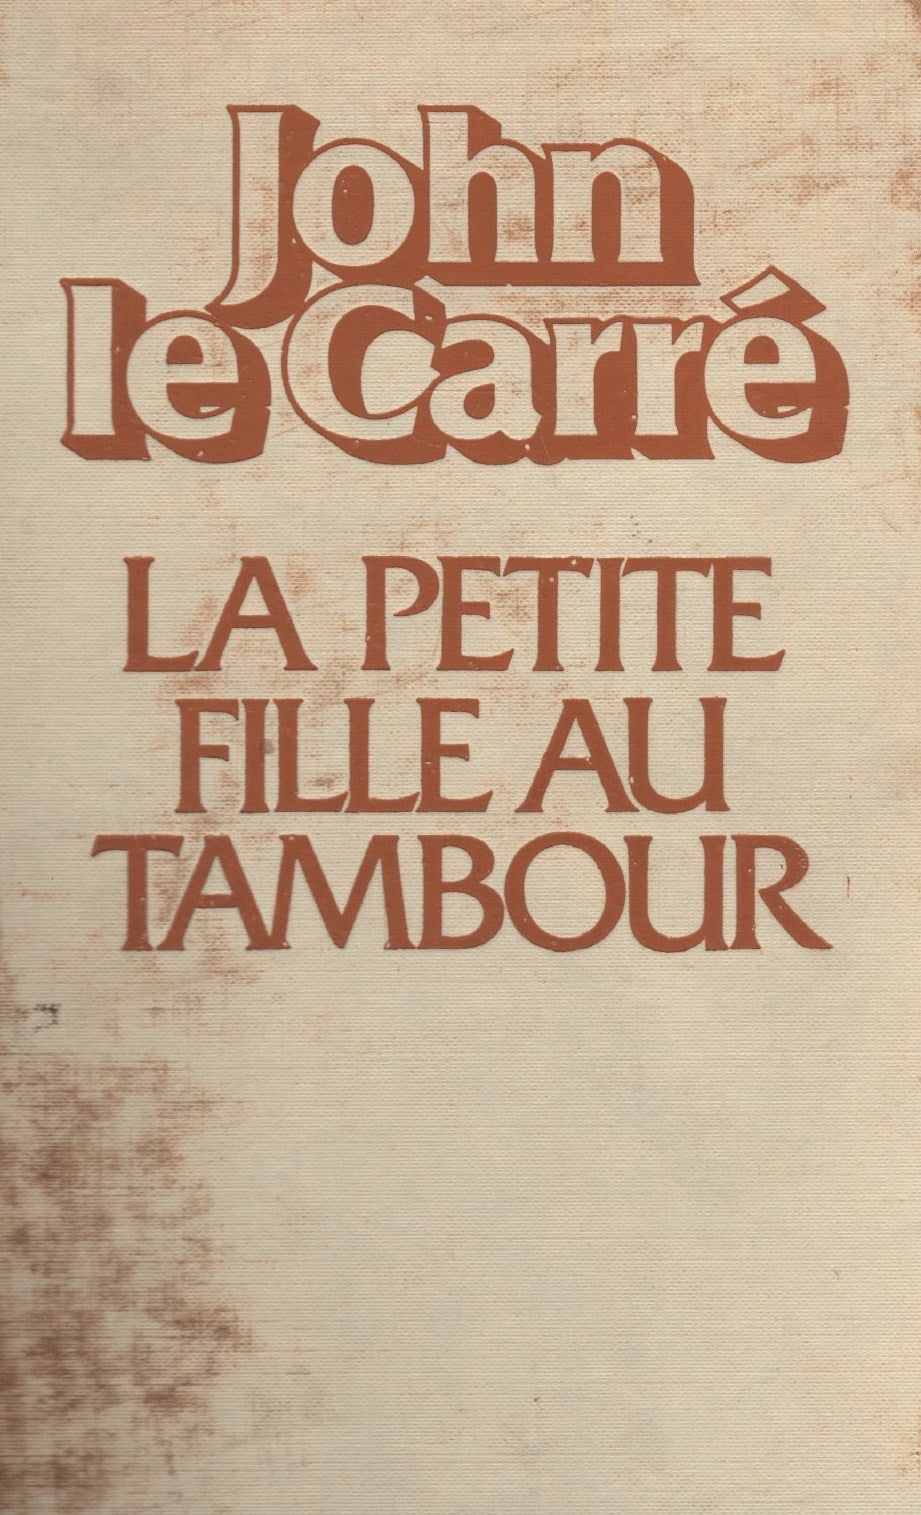 Livre ISBN 2221011031 La petite fille au tambour # 2 (John Le Carré)